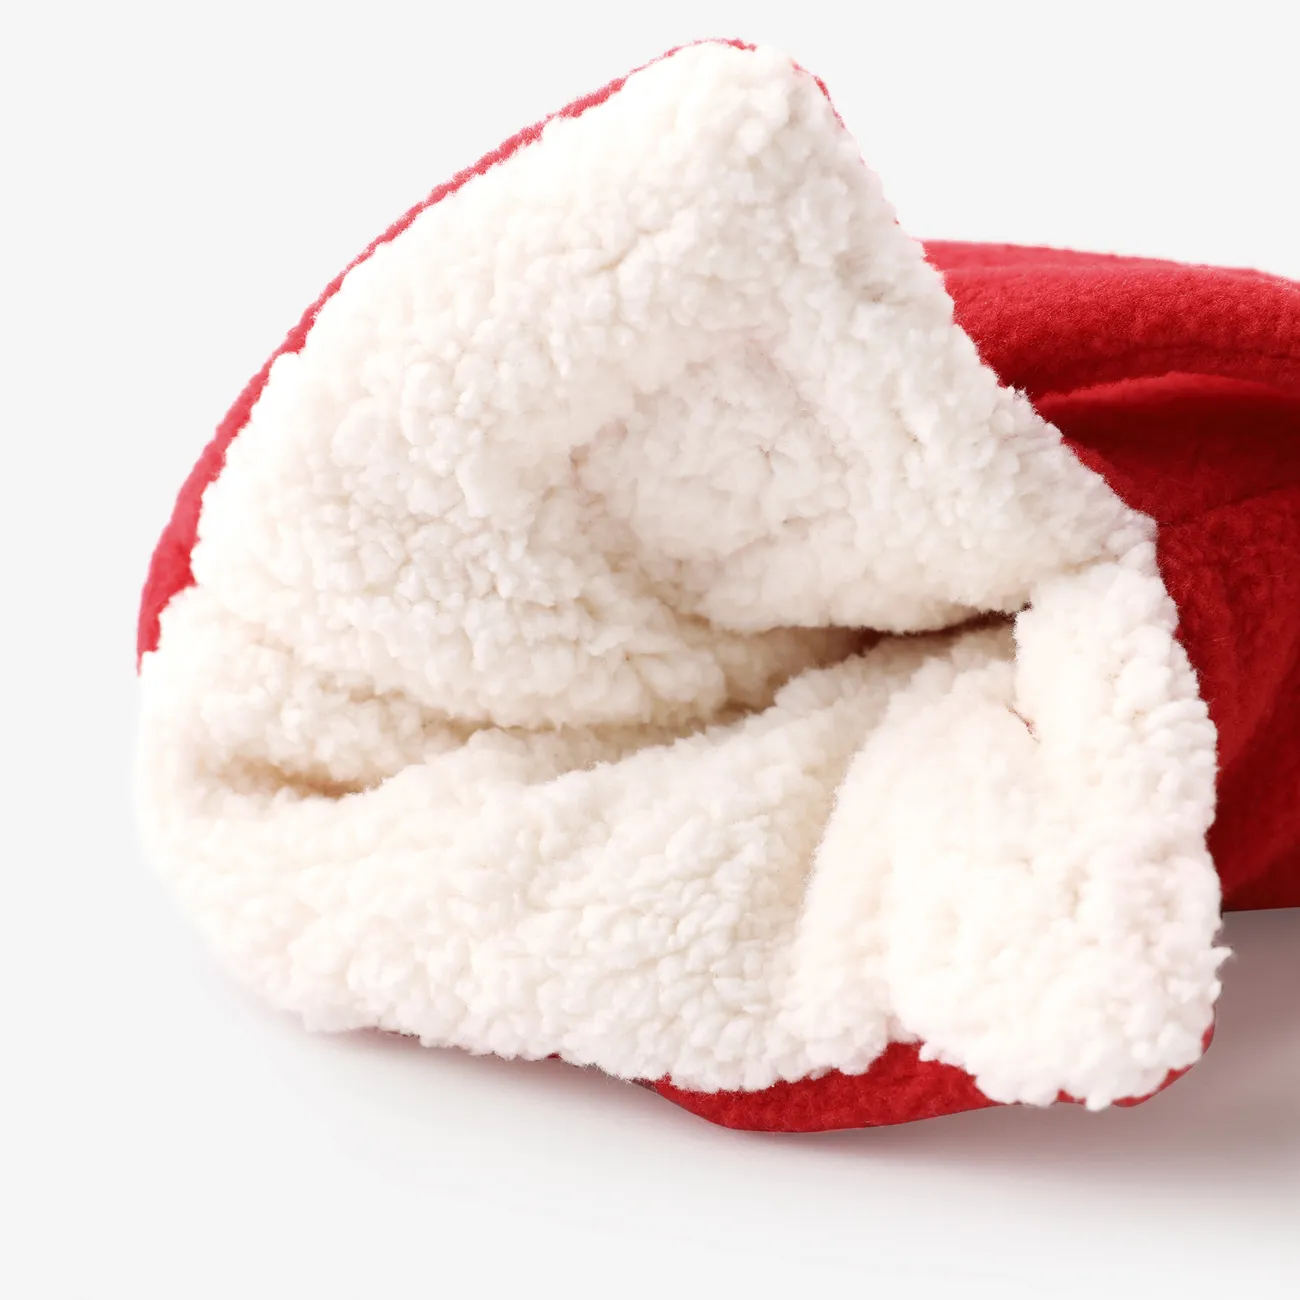 Baby's High Fleece warme Baumwollstiefel mit weicher Sohle rot big image 1